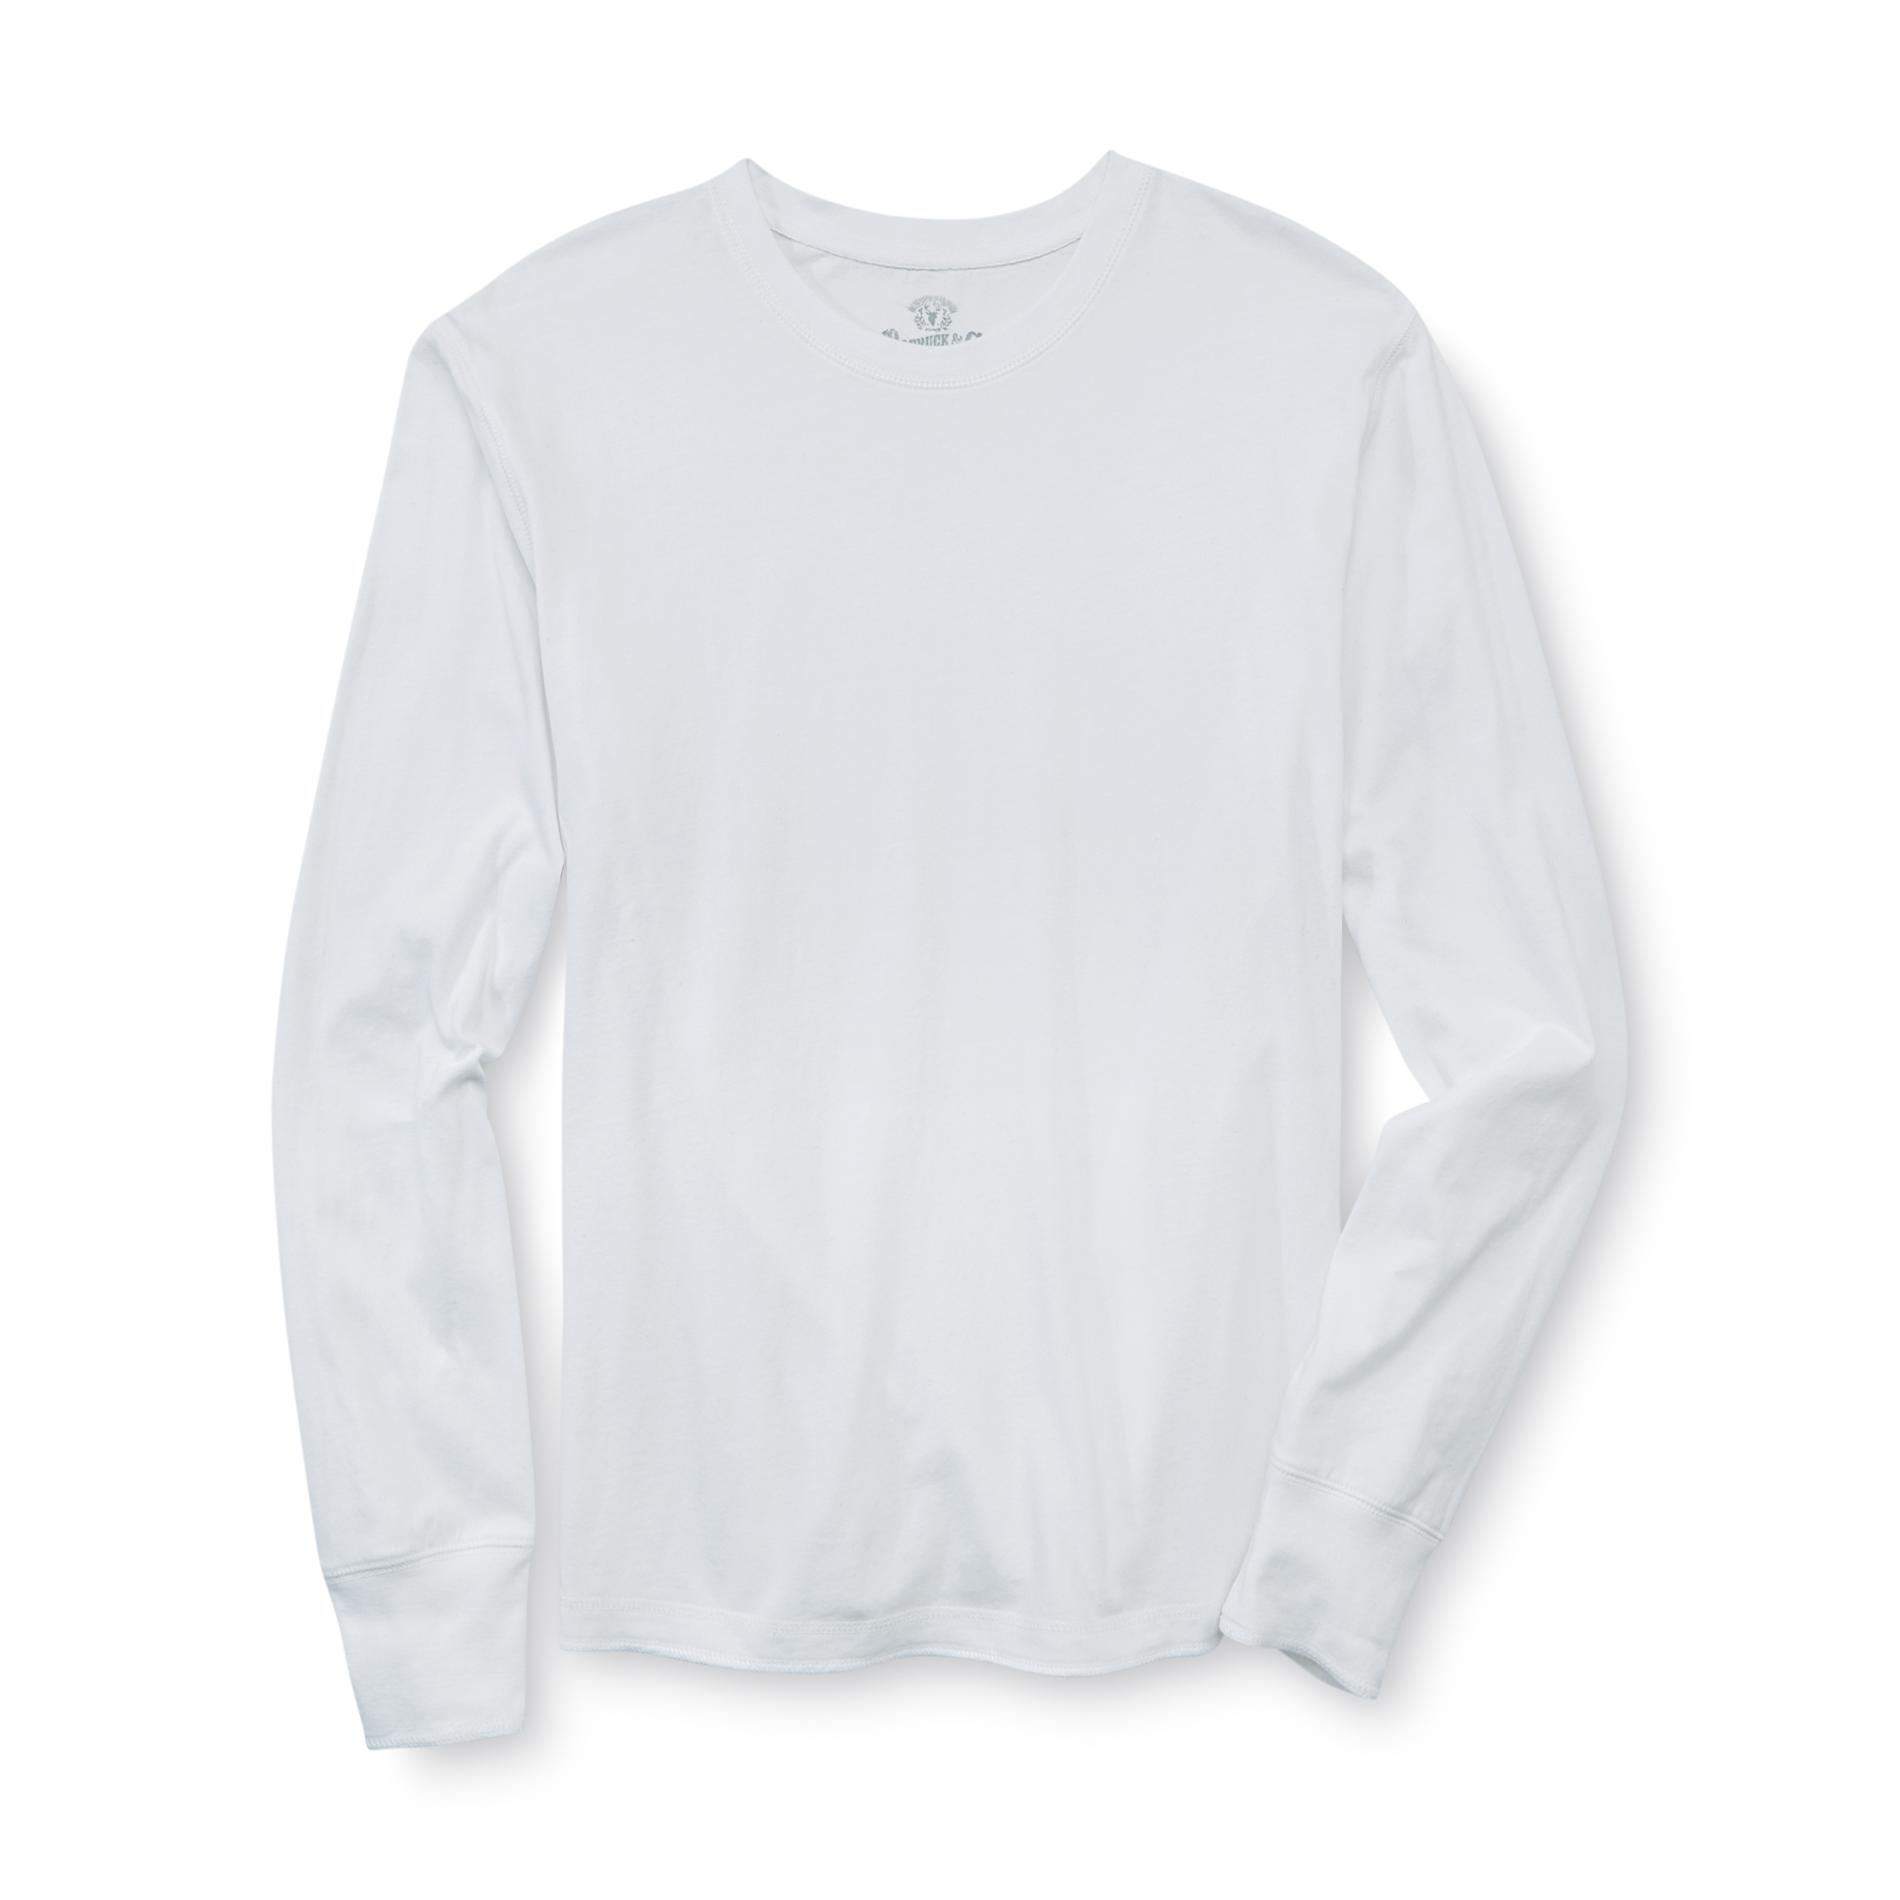 Roebuck & Co. Young Men's Long-Sleeve T-Shirt